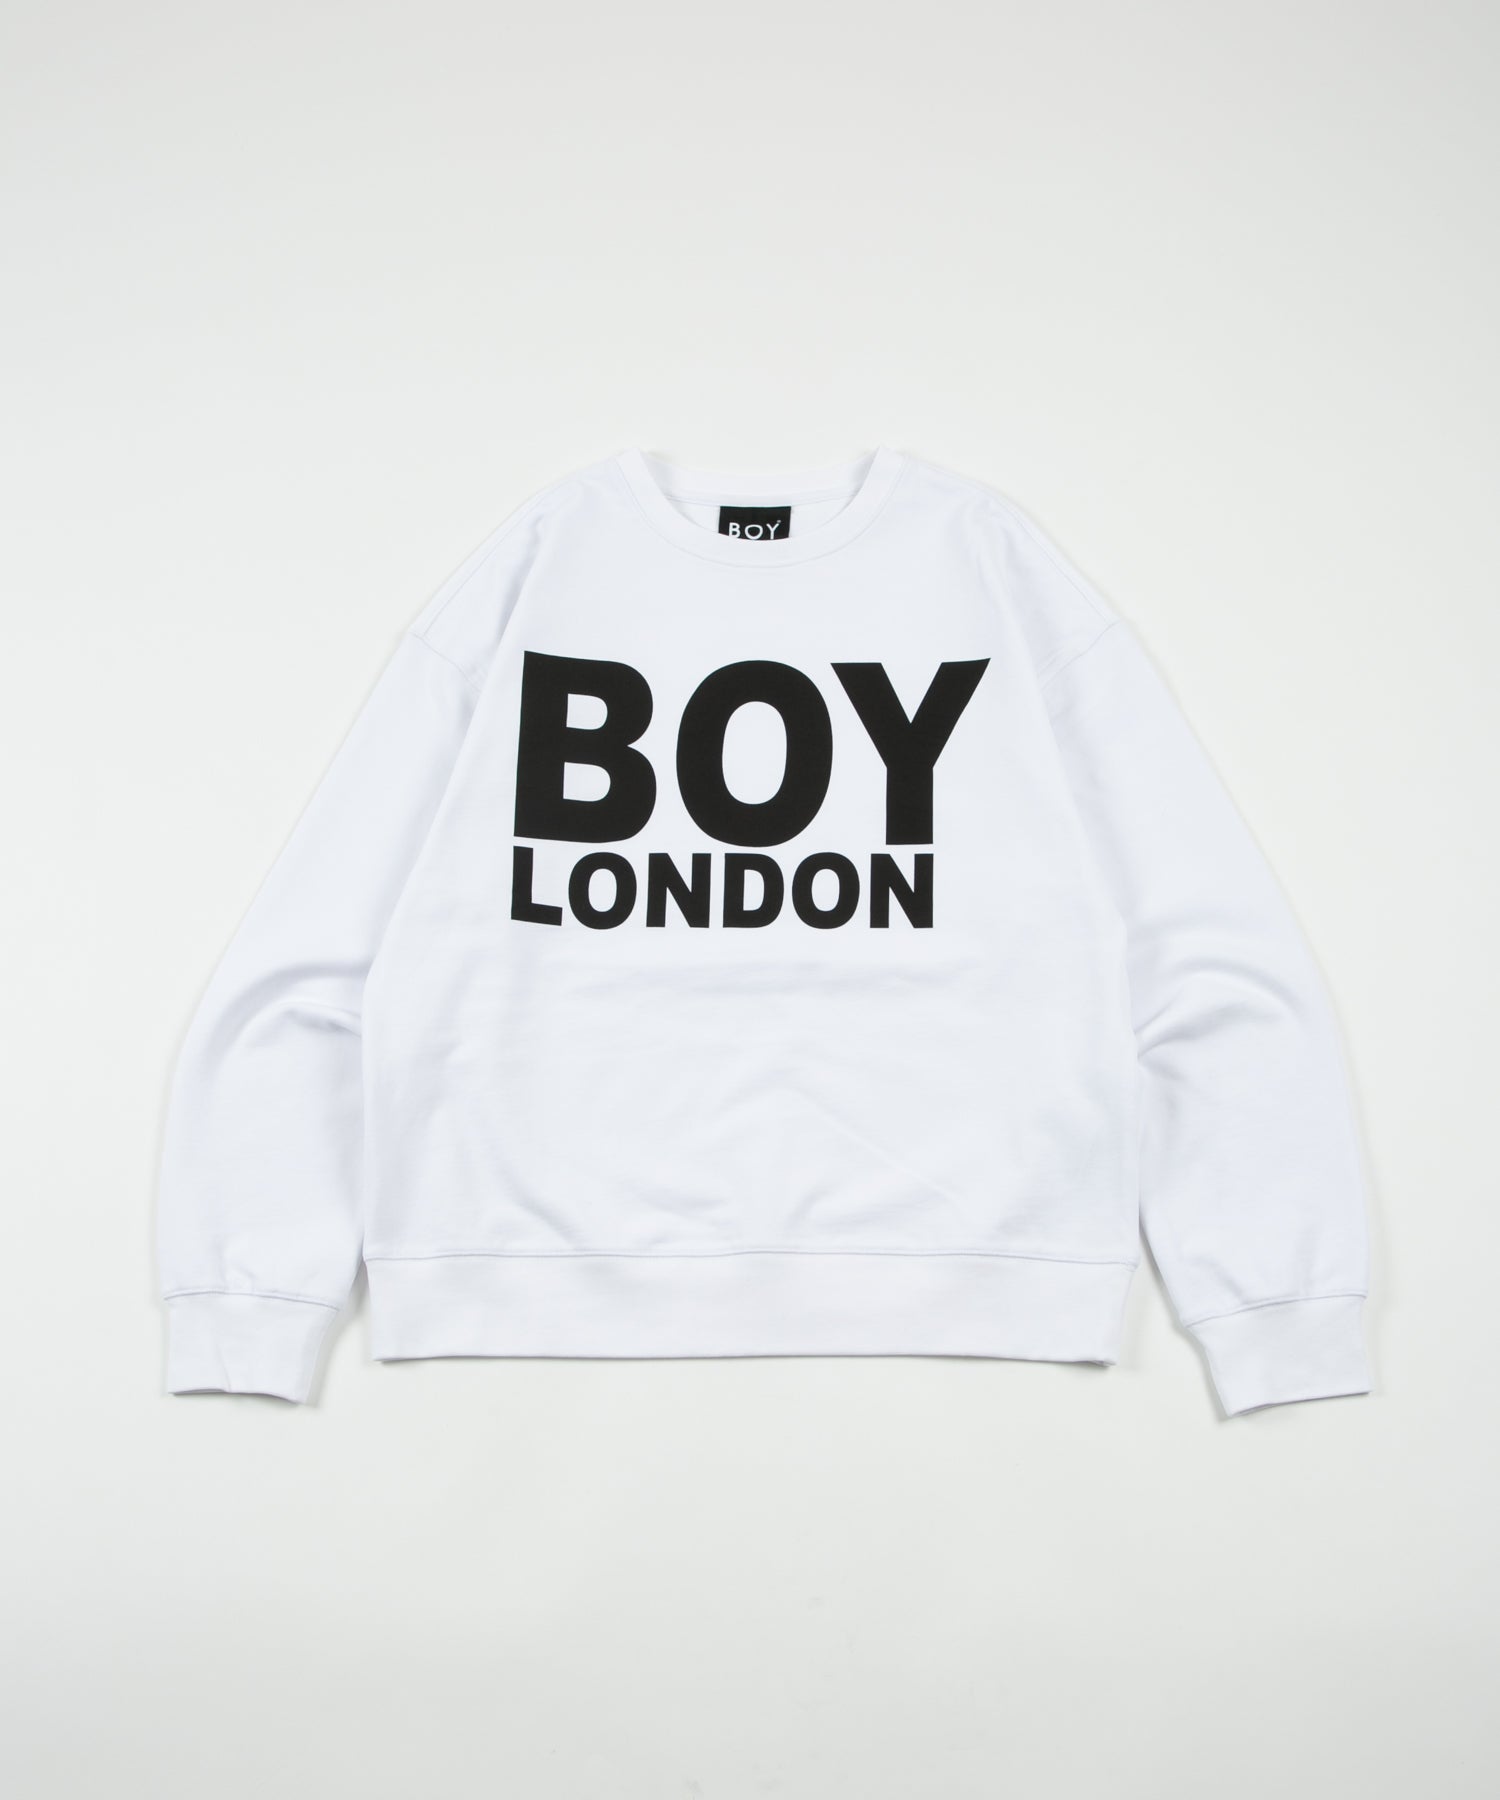 売れ筋】 新品、限定品 BOY LONDON メンズ | luftechnik.com